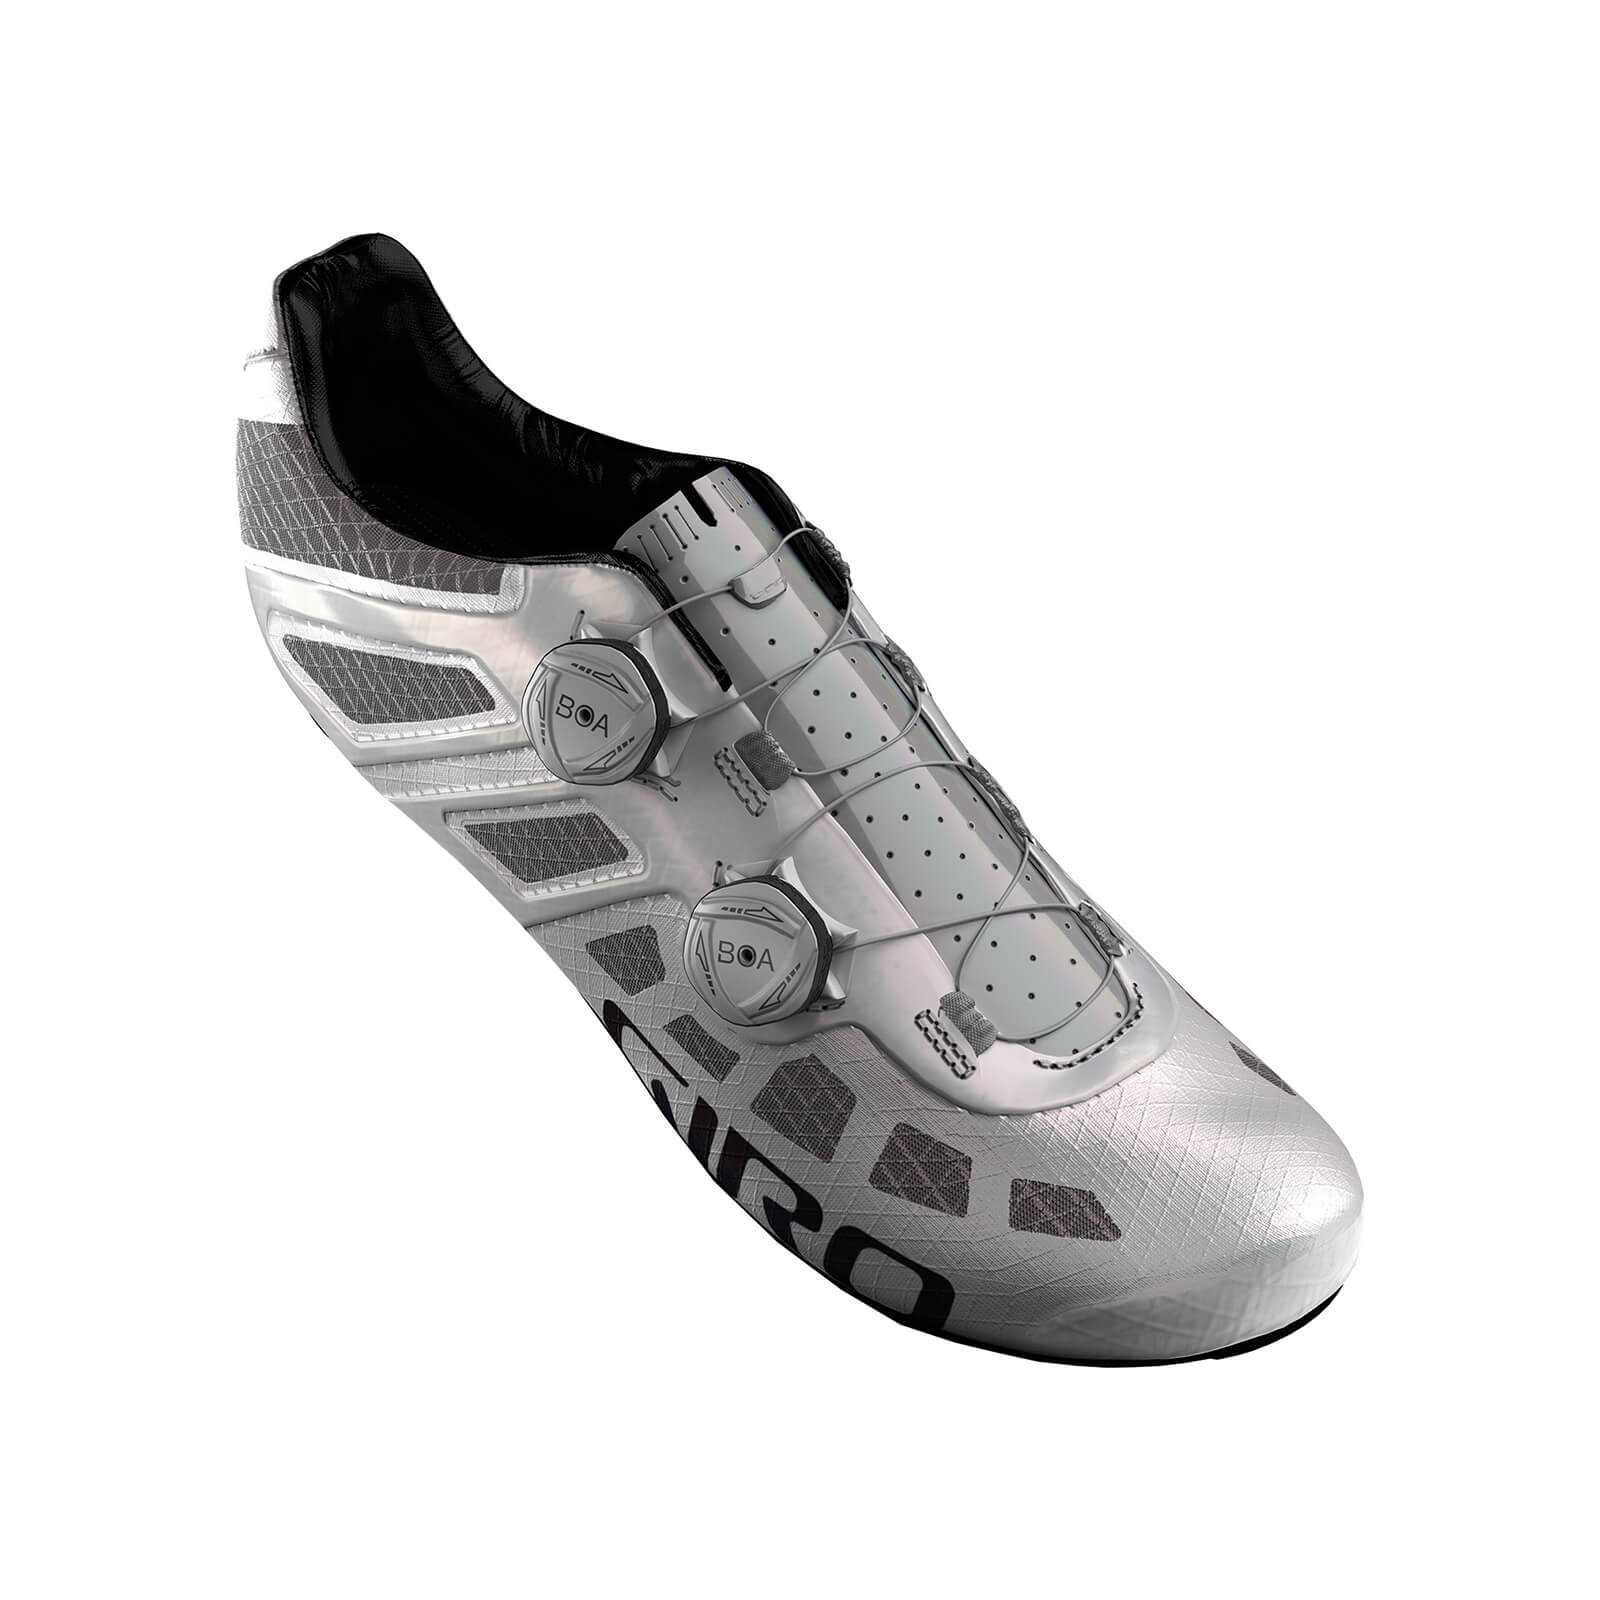 Giro Imperial Road Shoes – EU 44 – White